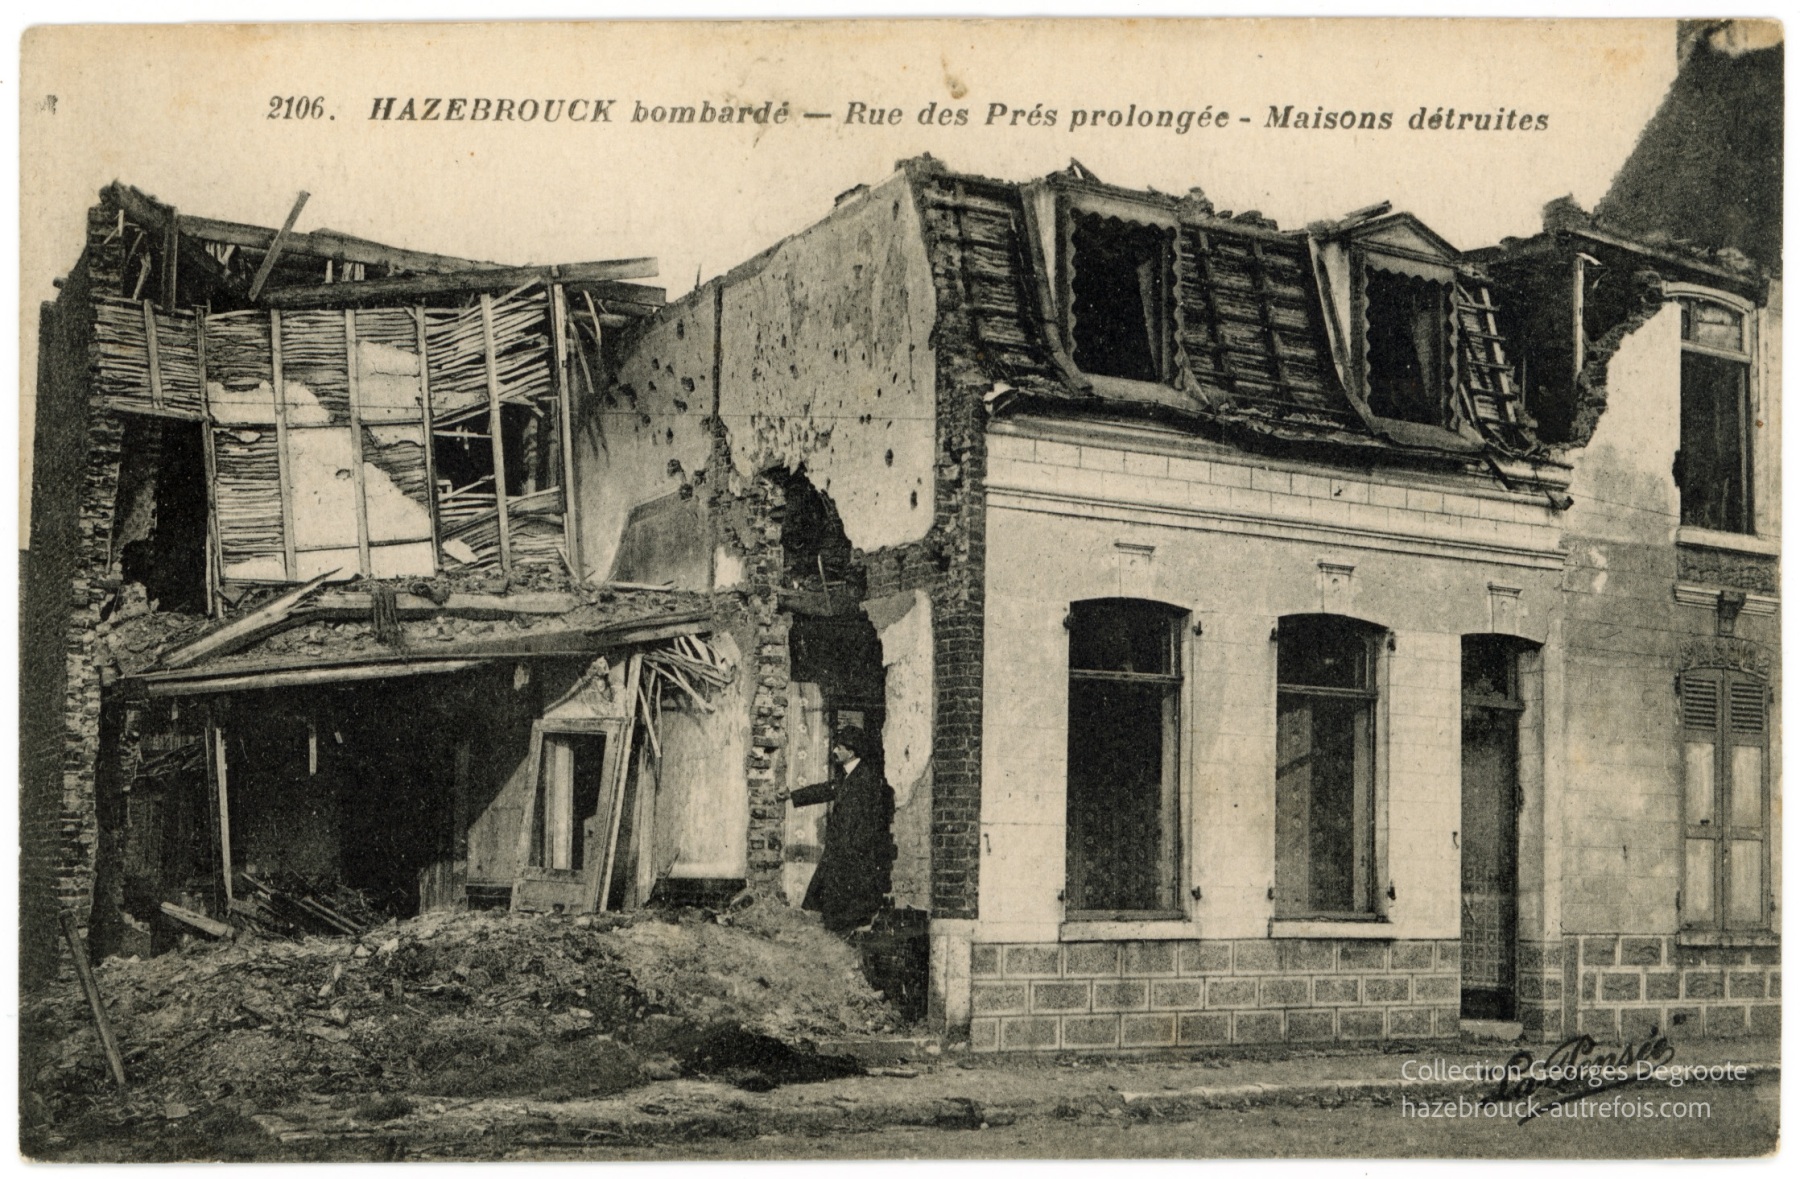 Hazebrouck bombardé - Rue des Prés prolongée